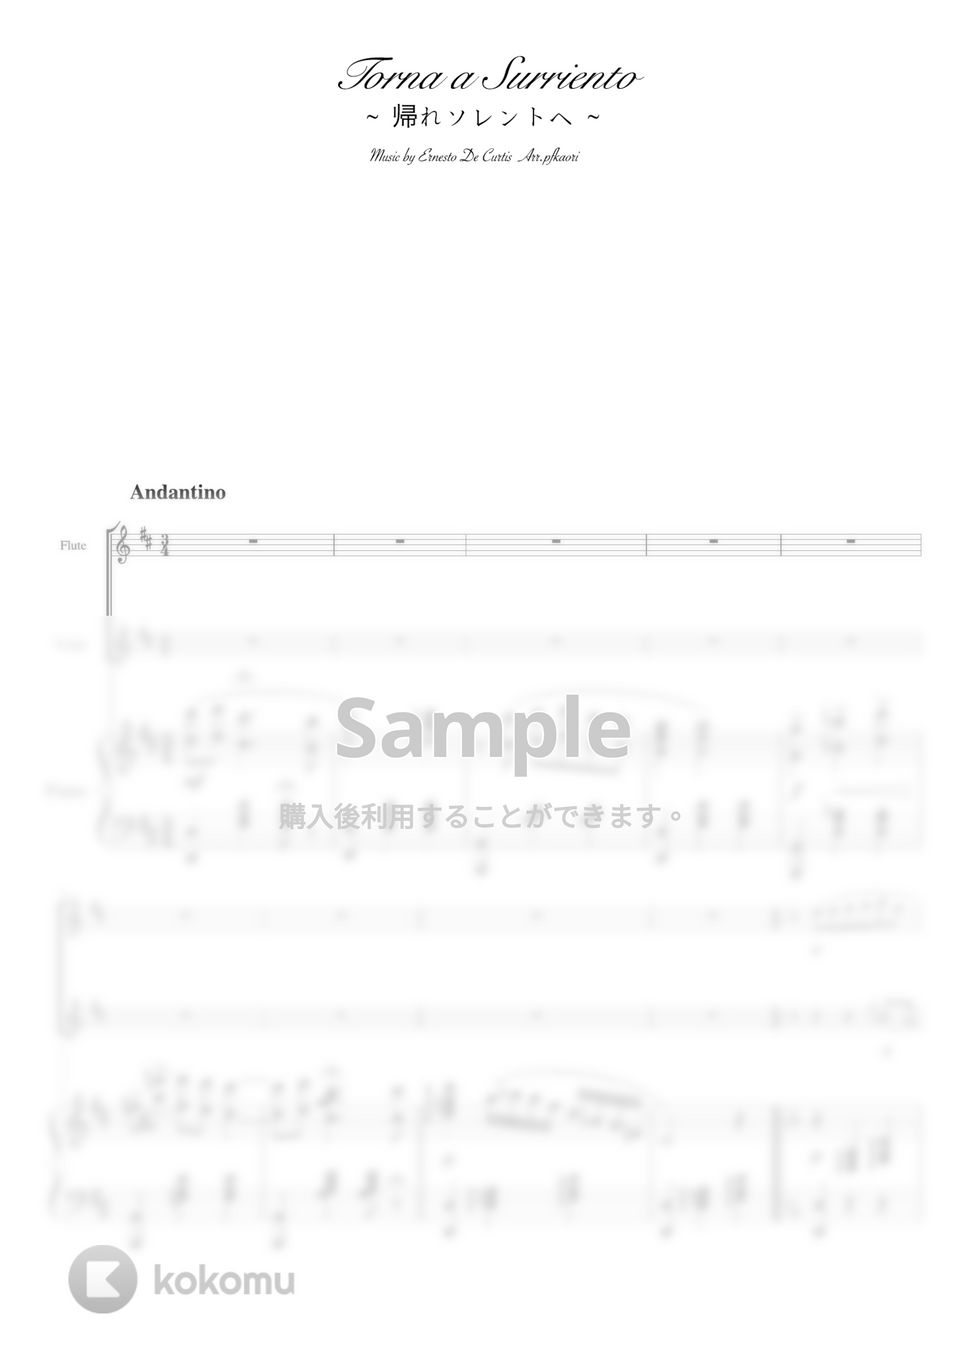 クルティス - 帰れソレントへ (D  ピアノトリオ/バイオリン・フルート) by pfkaori